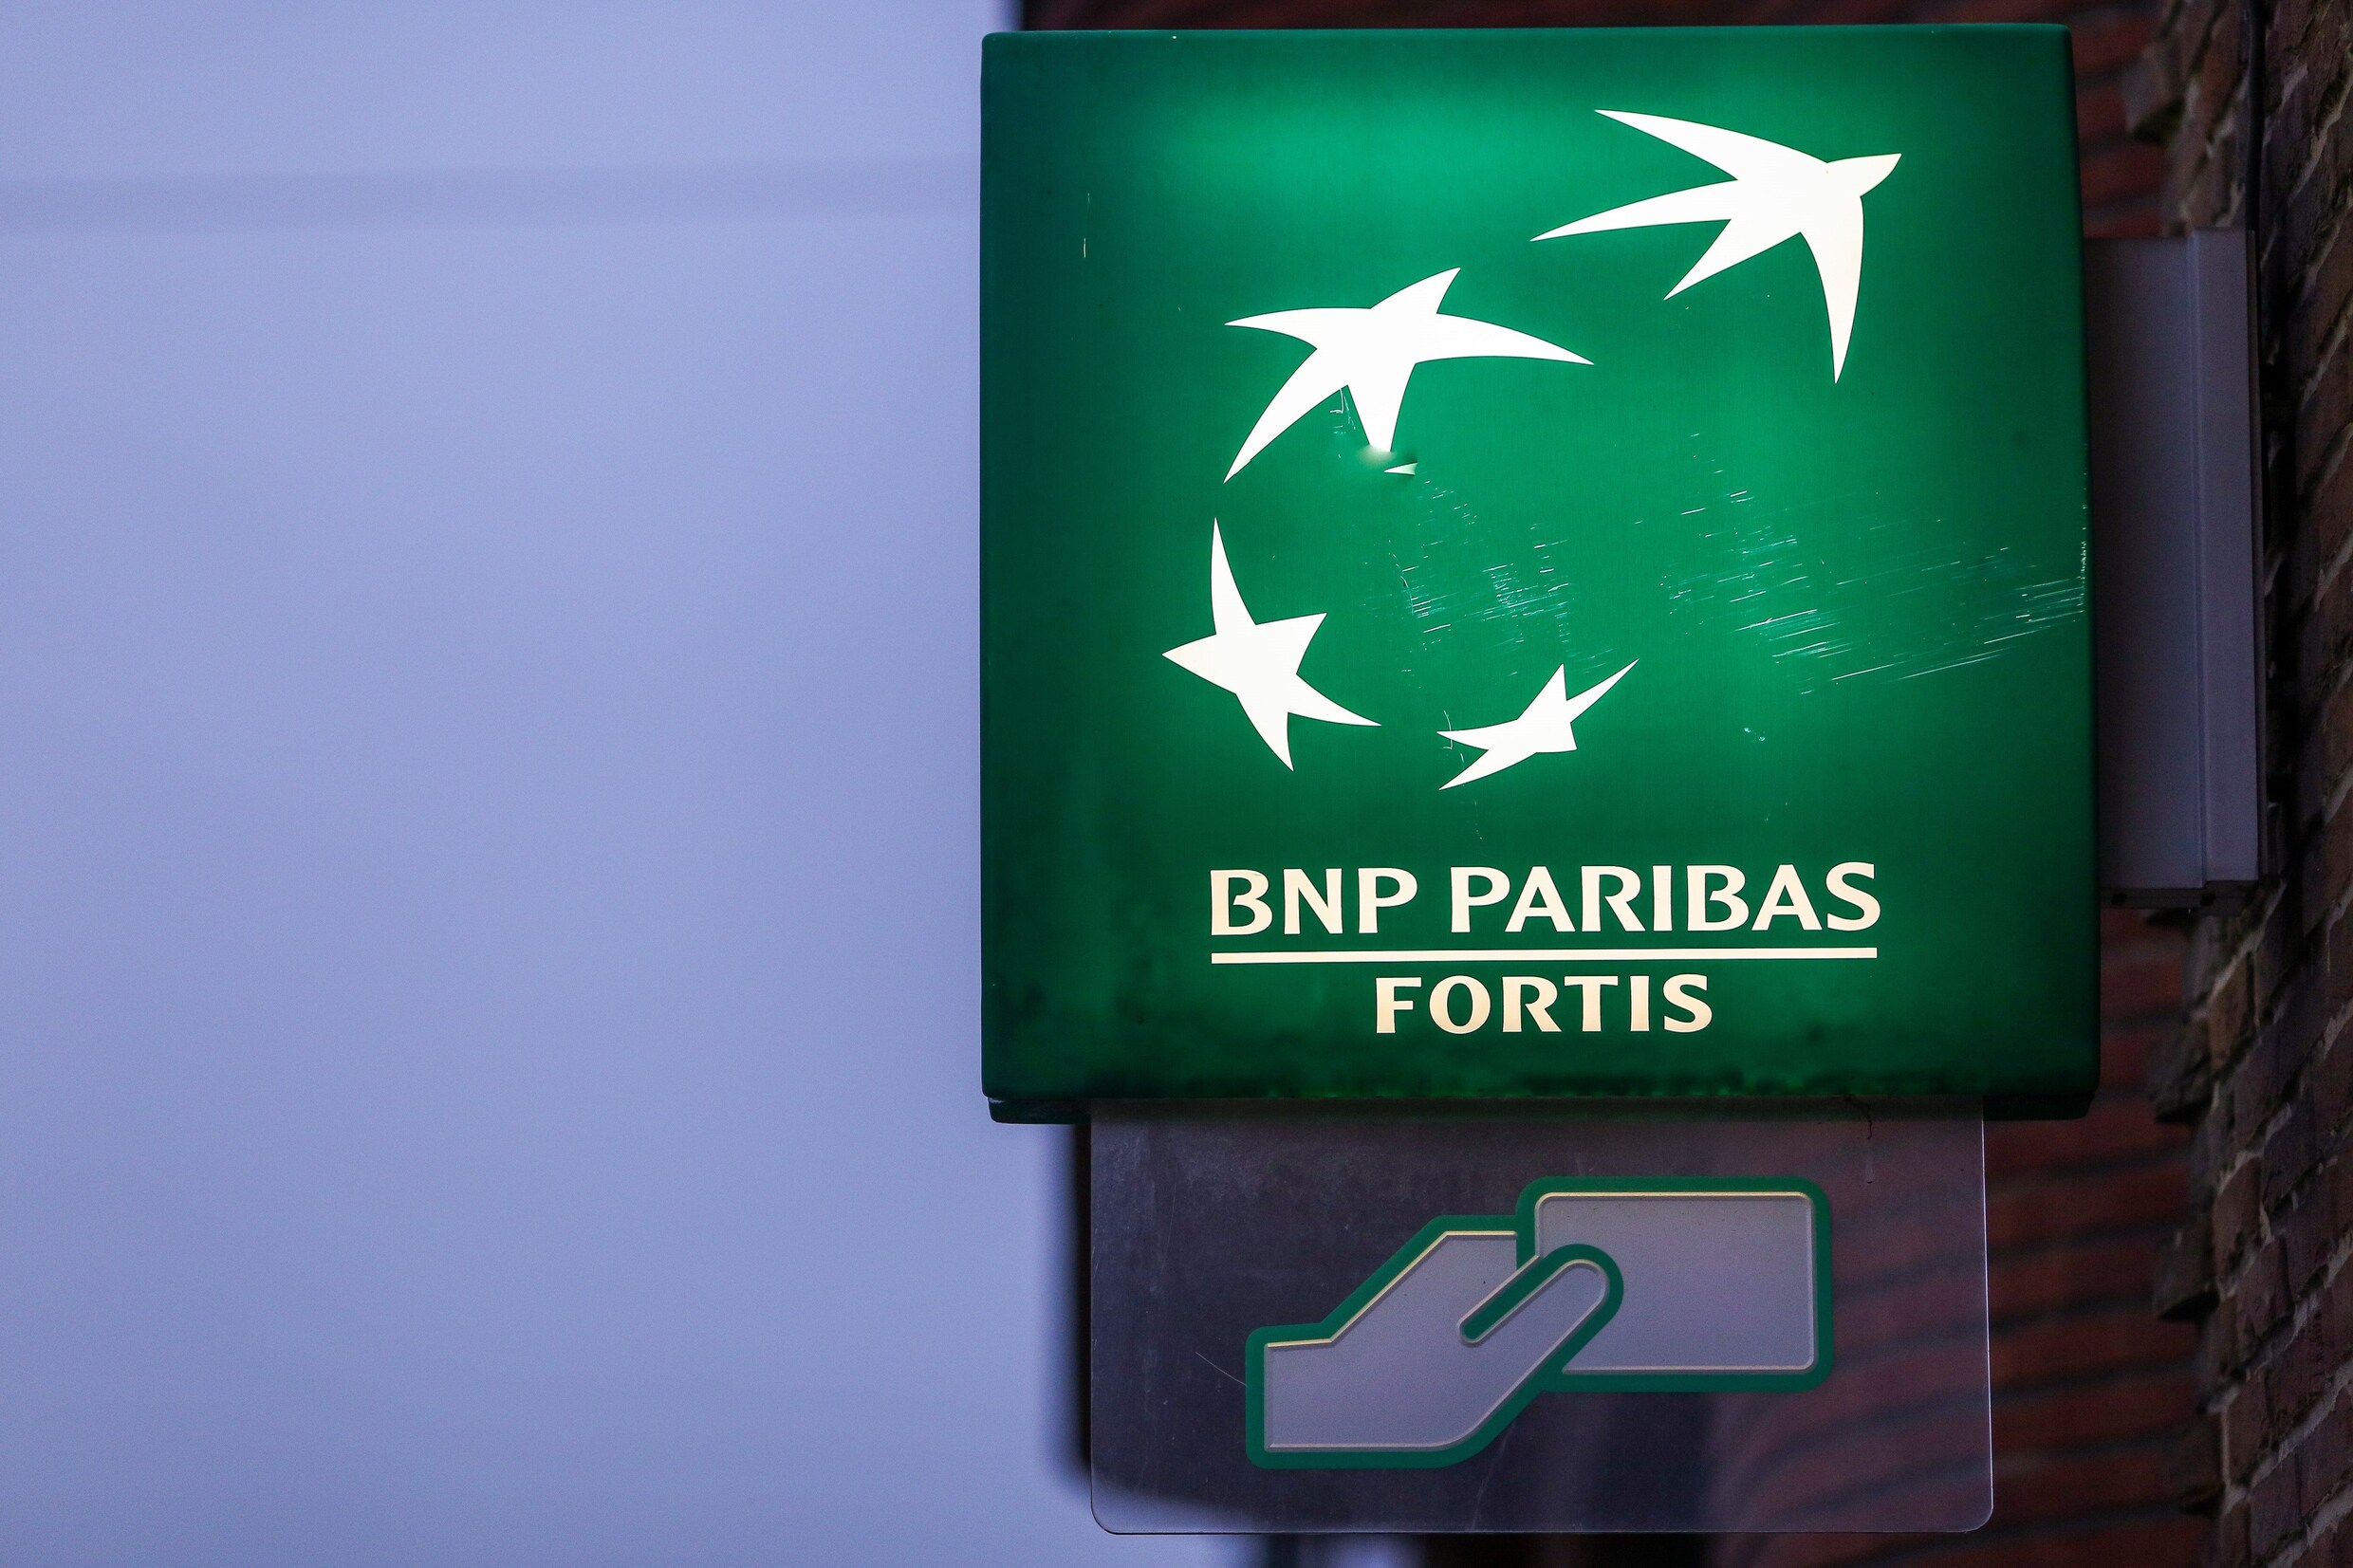 “1.000 banen bedreigd bij BNP Paribas Fortis”, oudere werknemers kunnen op 58 op pensioen